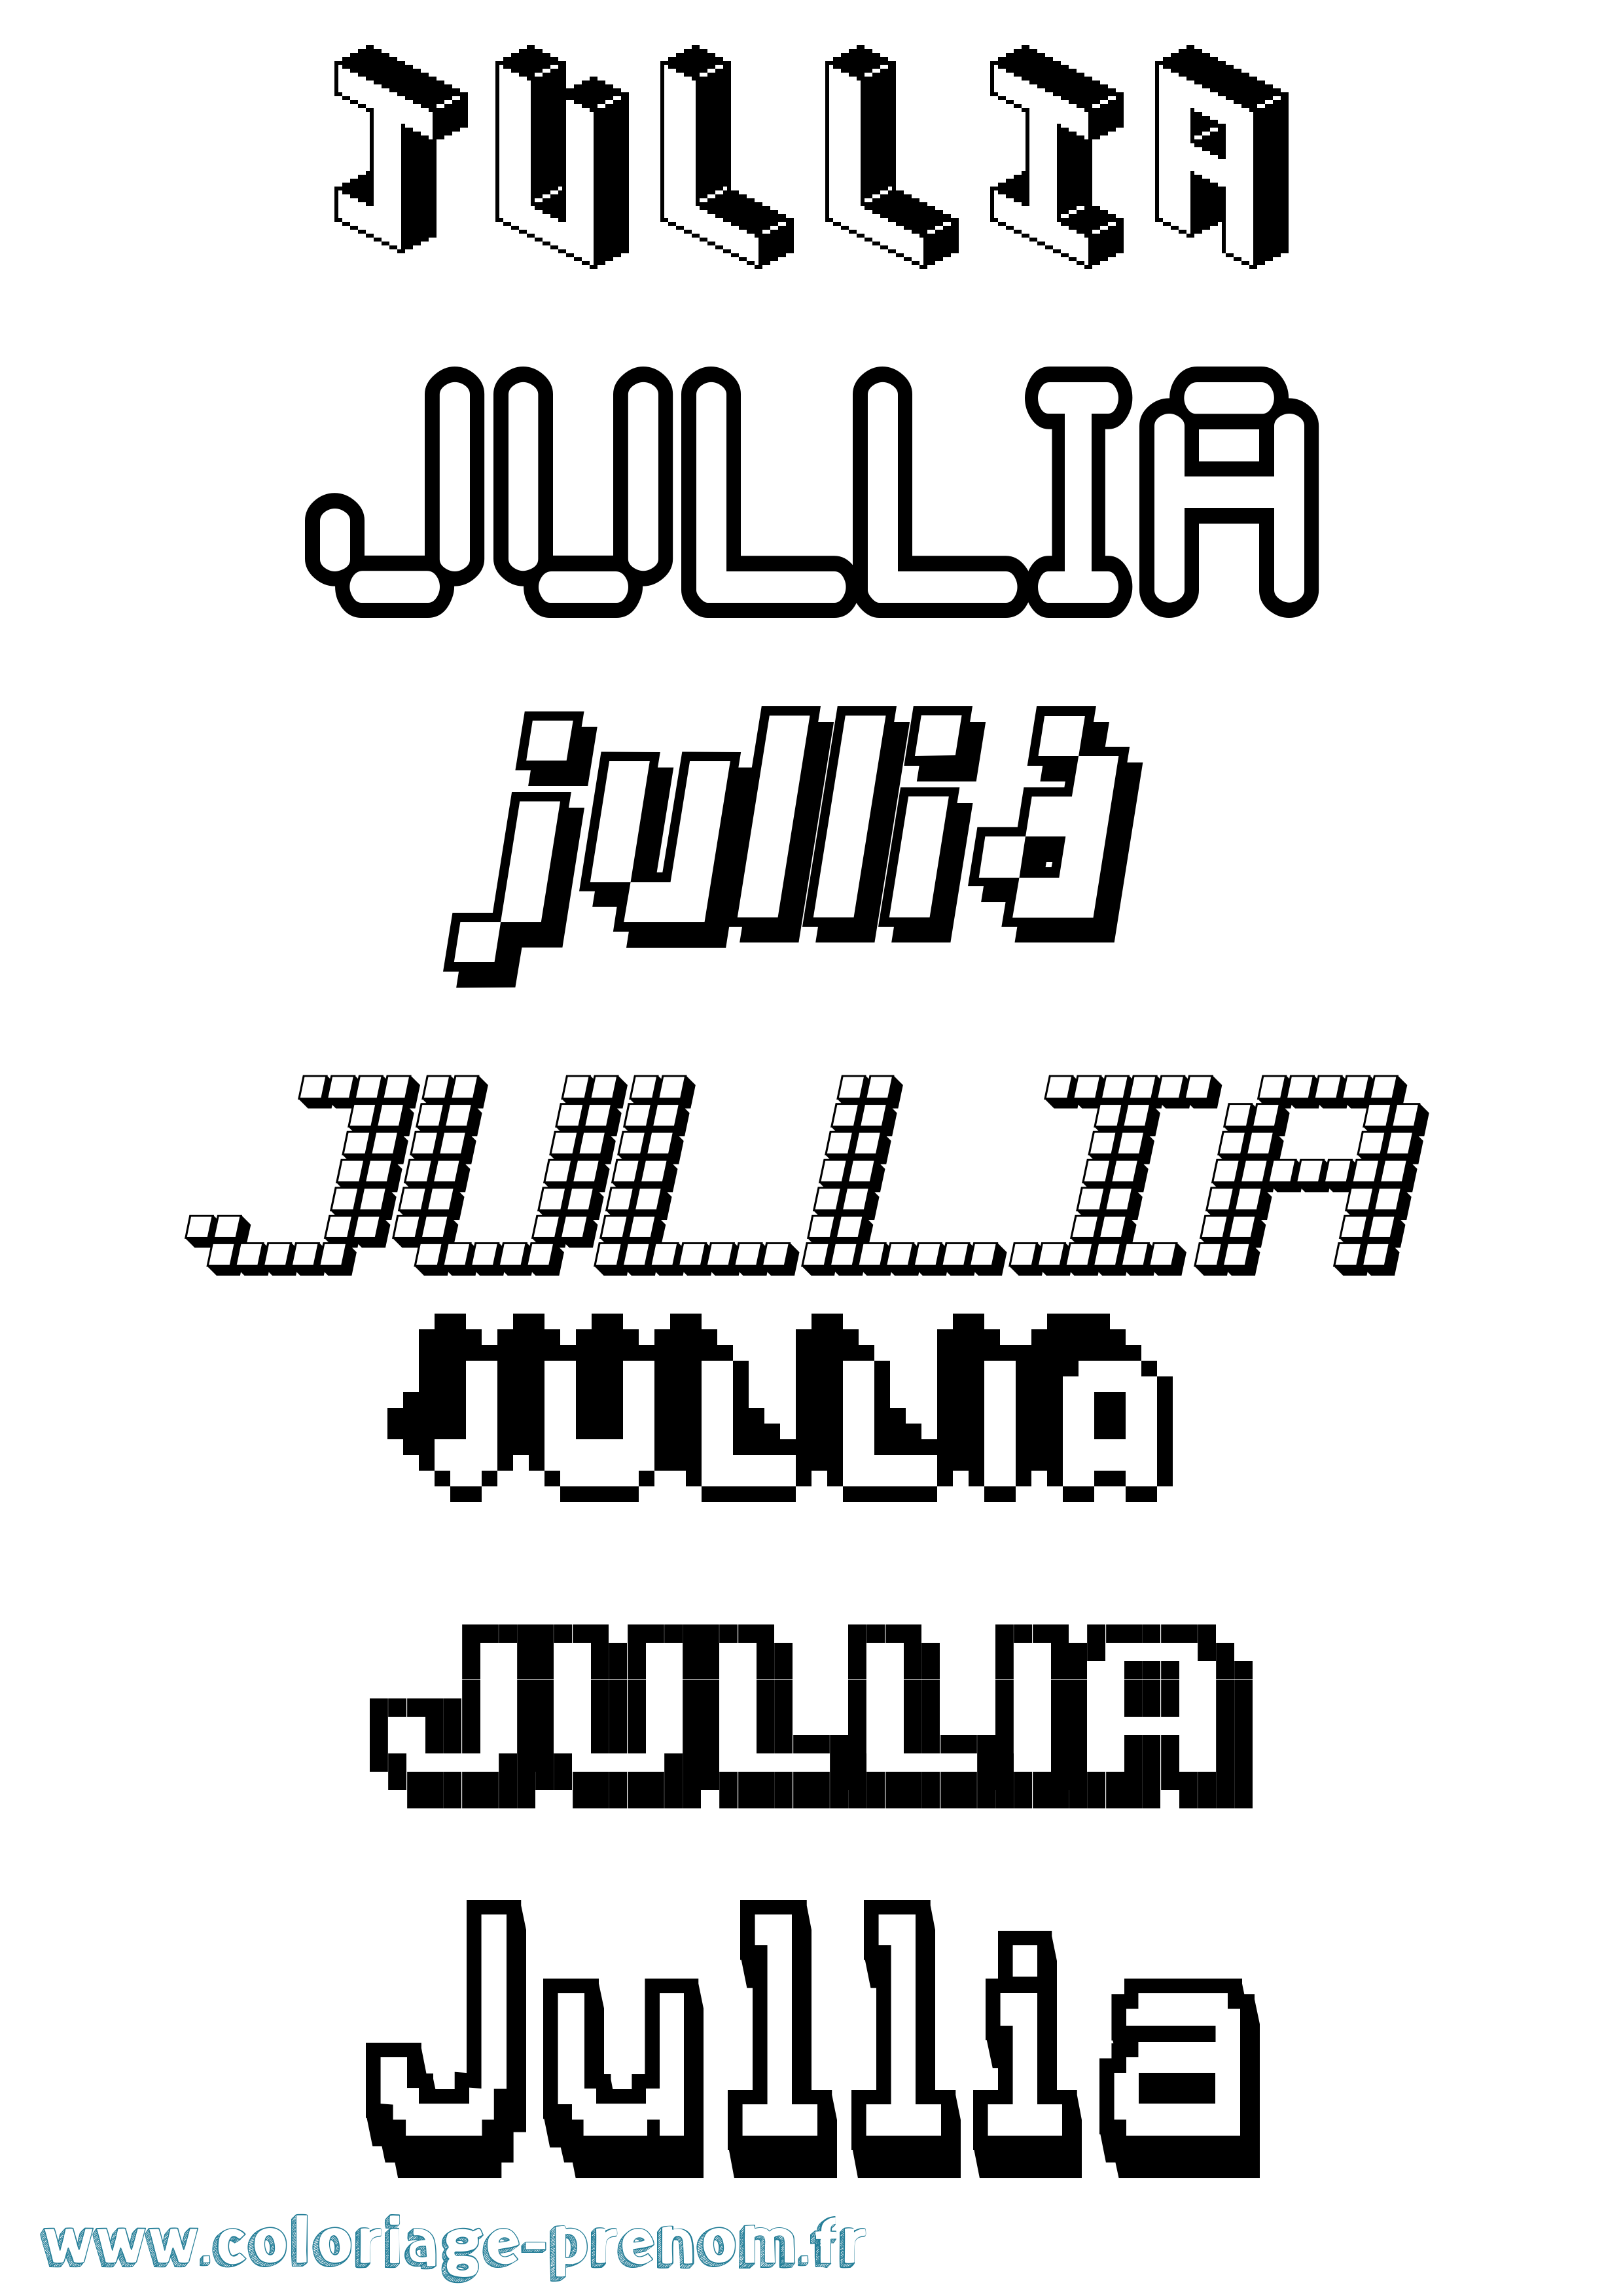 Coloriage prénom Jullia Pixel